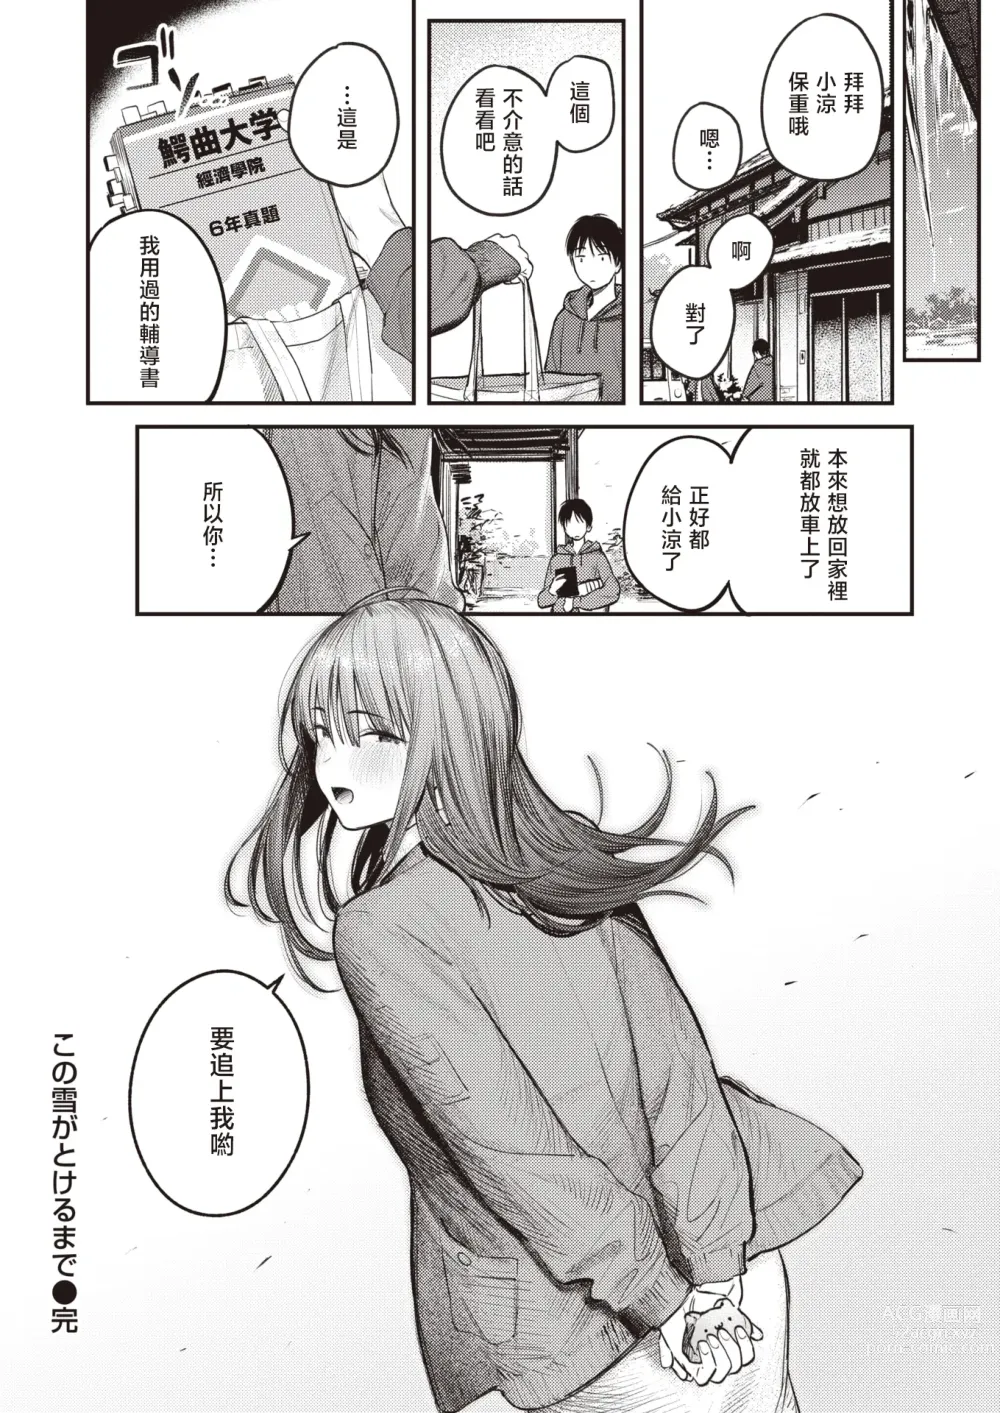 Page 25 of manga 直到雾释冰融